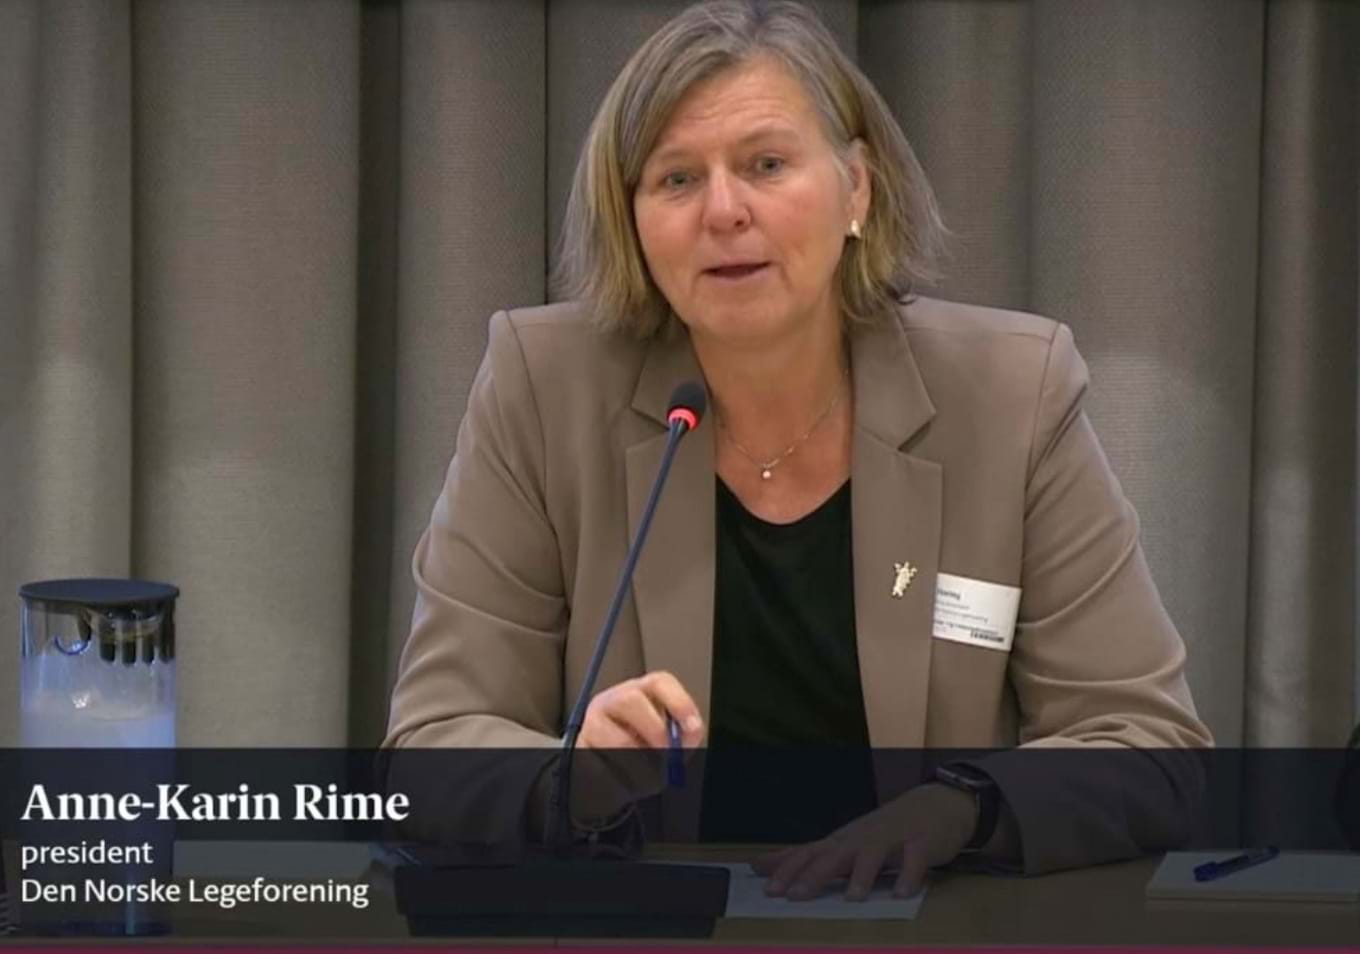 Skjermdump av Anne Karin Rime som deltar i en debatt om fritt behandlingsvalg.